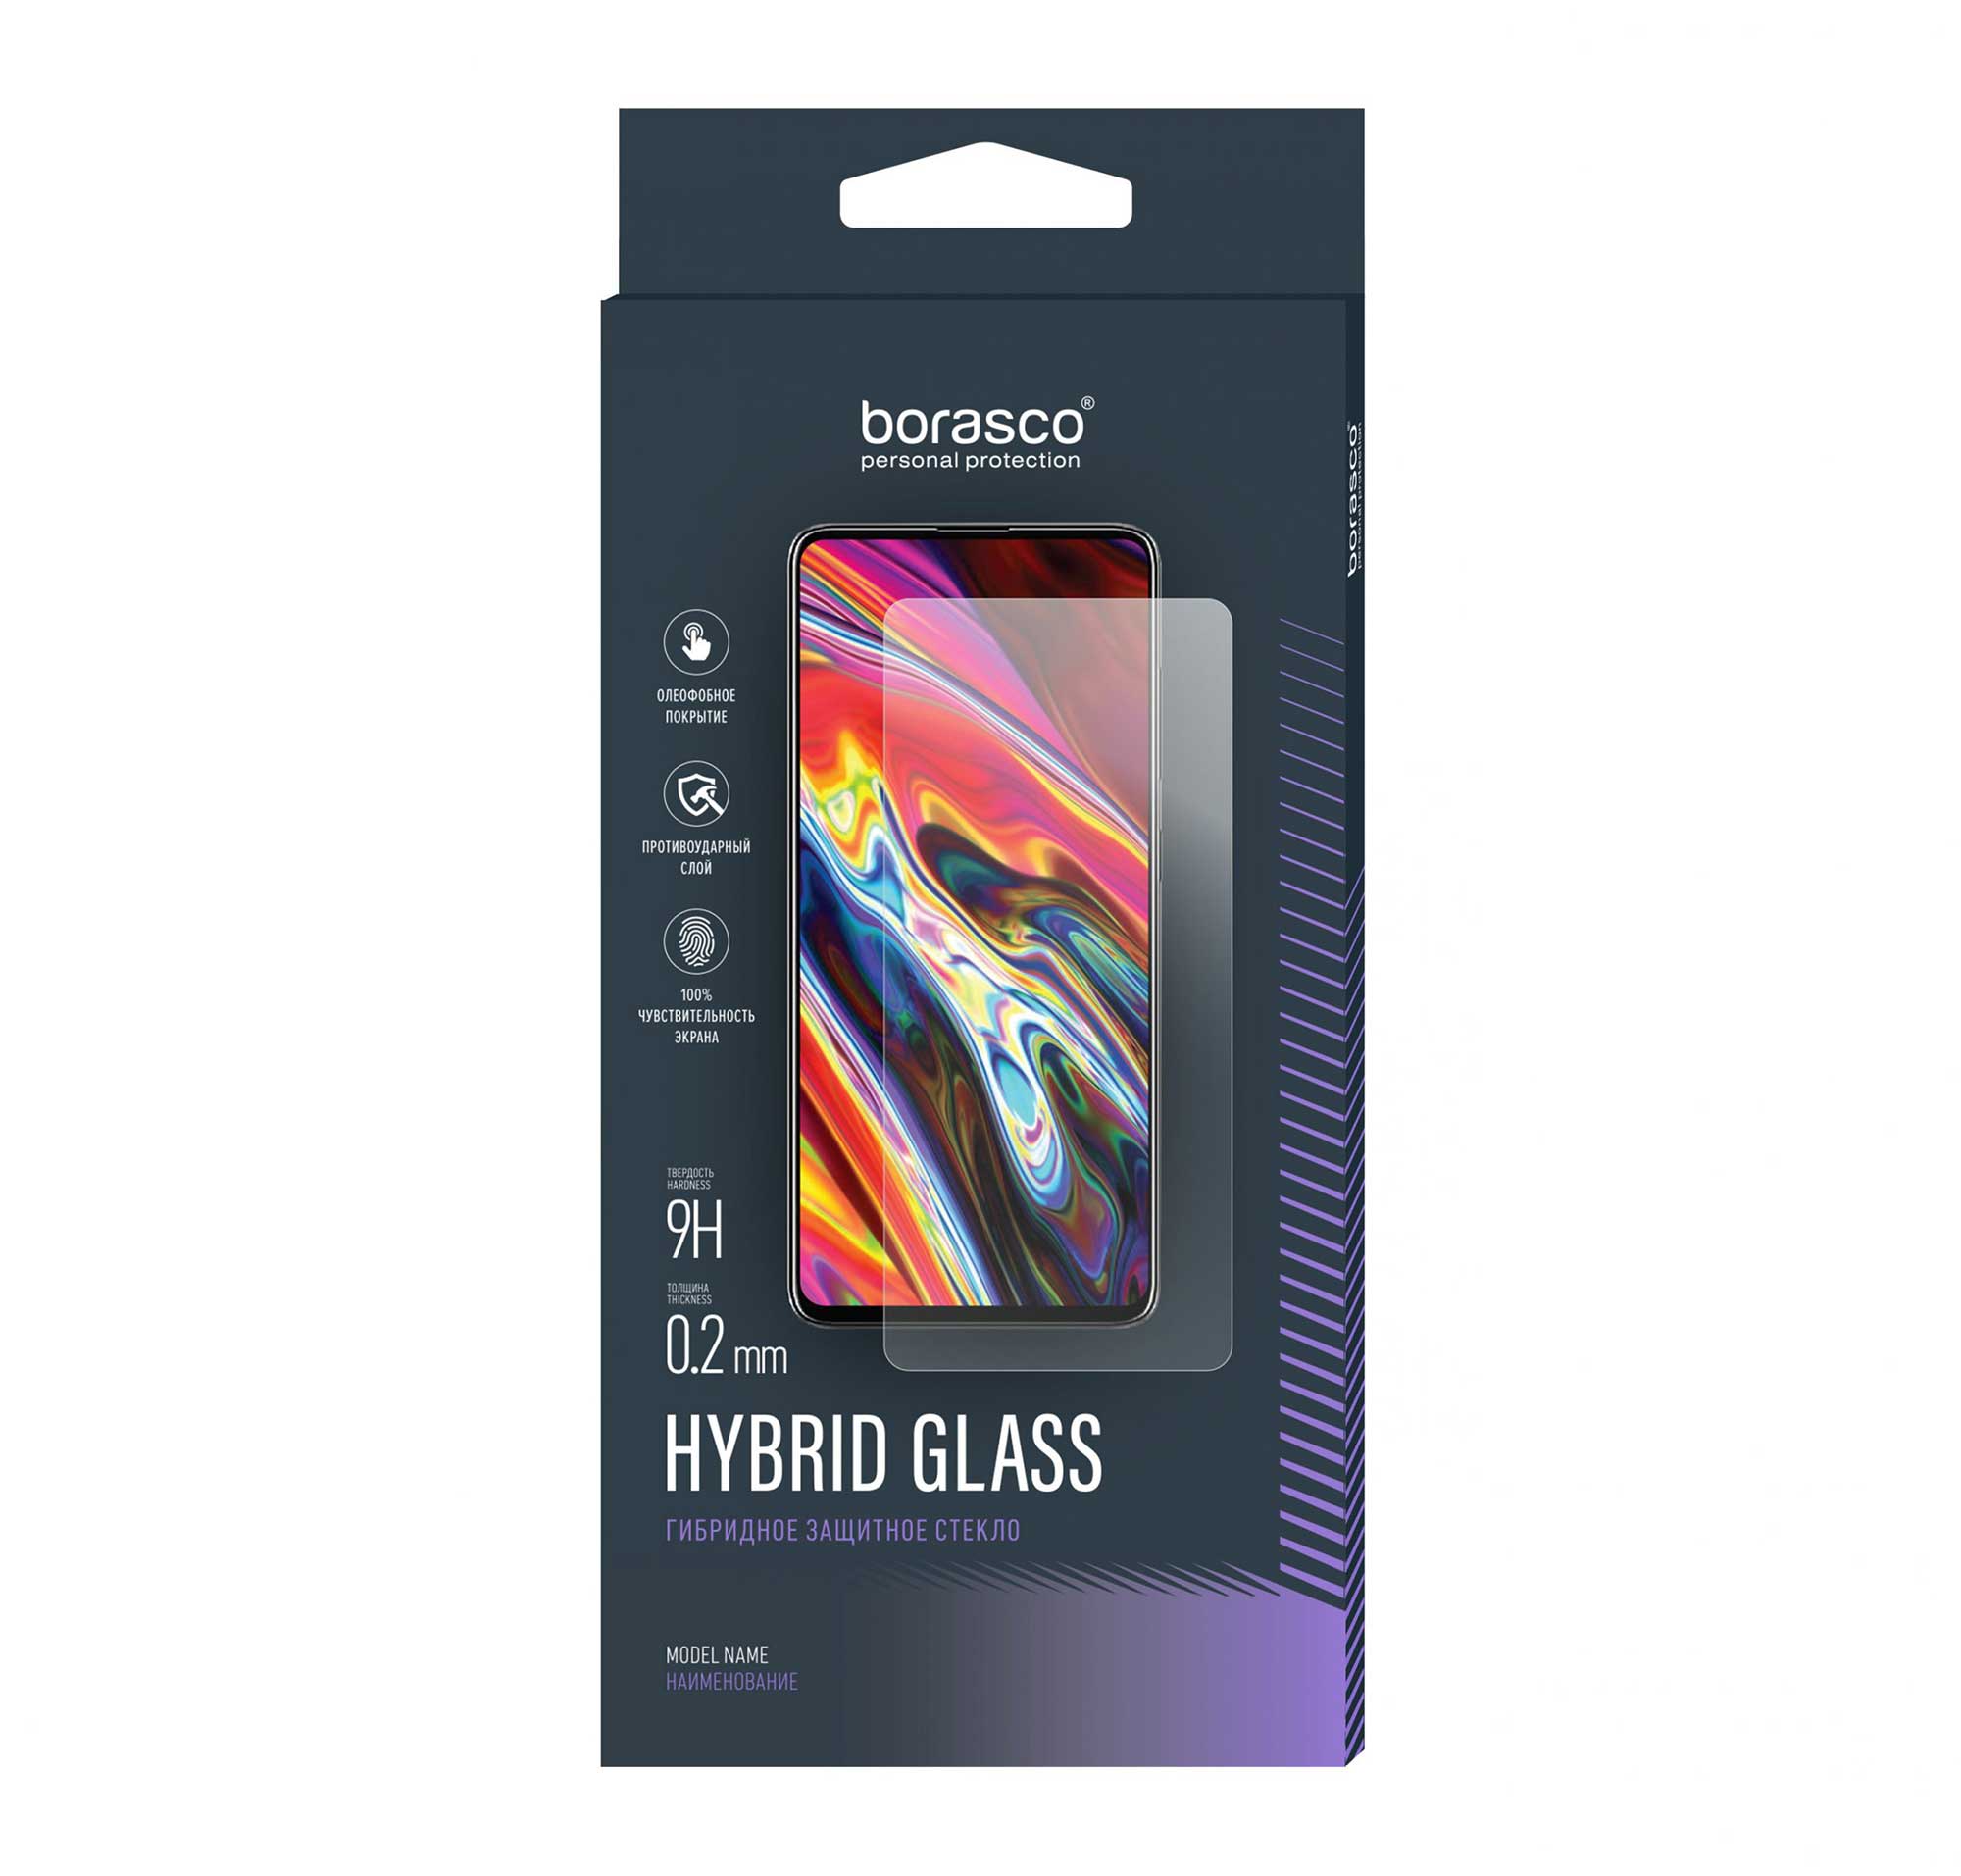 Защитное стекло BoraSCO Hybrid Glass для BQ 6040L Magic чехол mypads абстракция графити для bq bq 6040l magic задняя панель накладка бампер